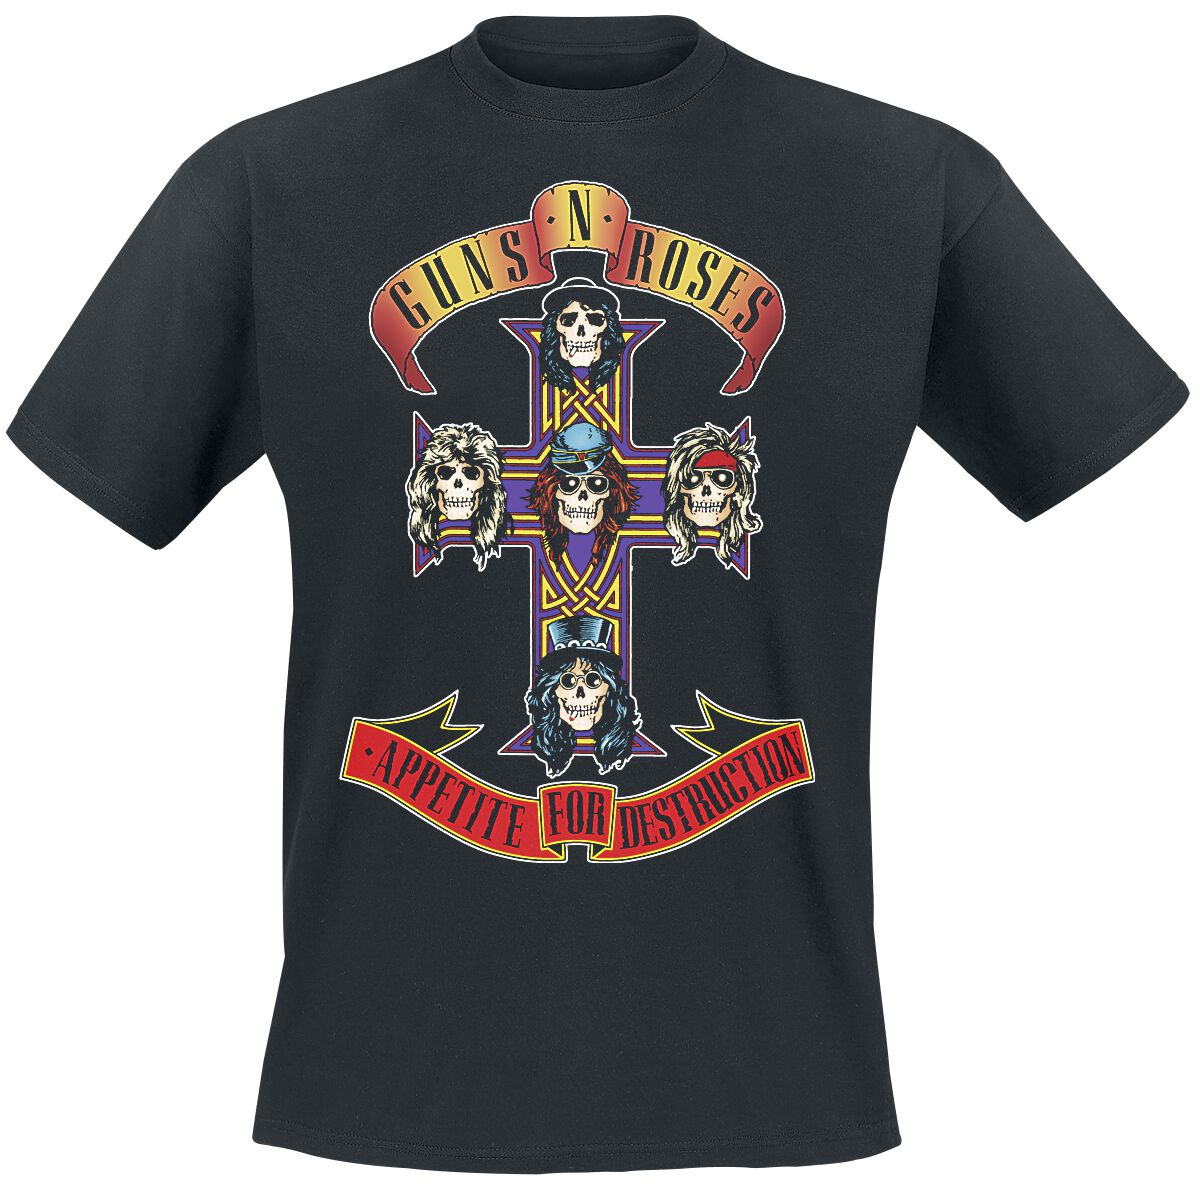 Guns N` Roses T-Shirt - Appetite For Destruction - Cover - S bis 4XL - für Männer - Größe S - schwarz  - Lizenziertes Merchandise!